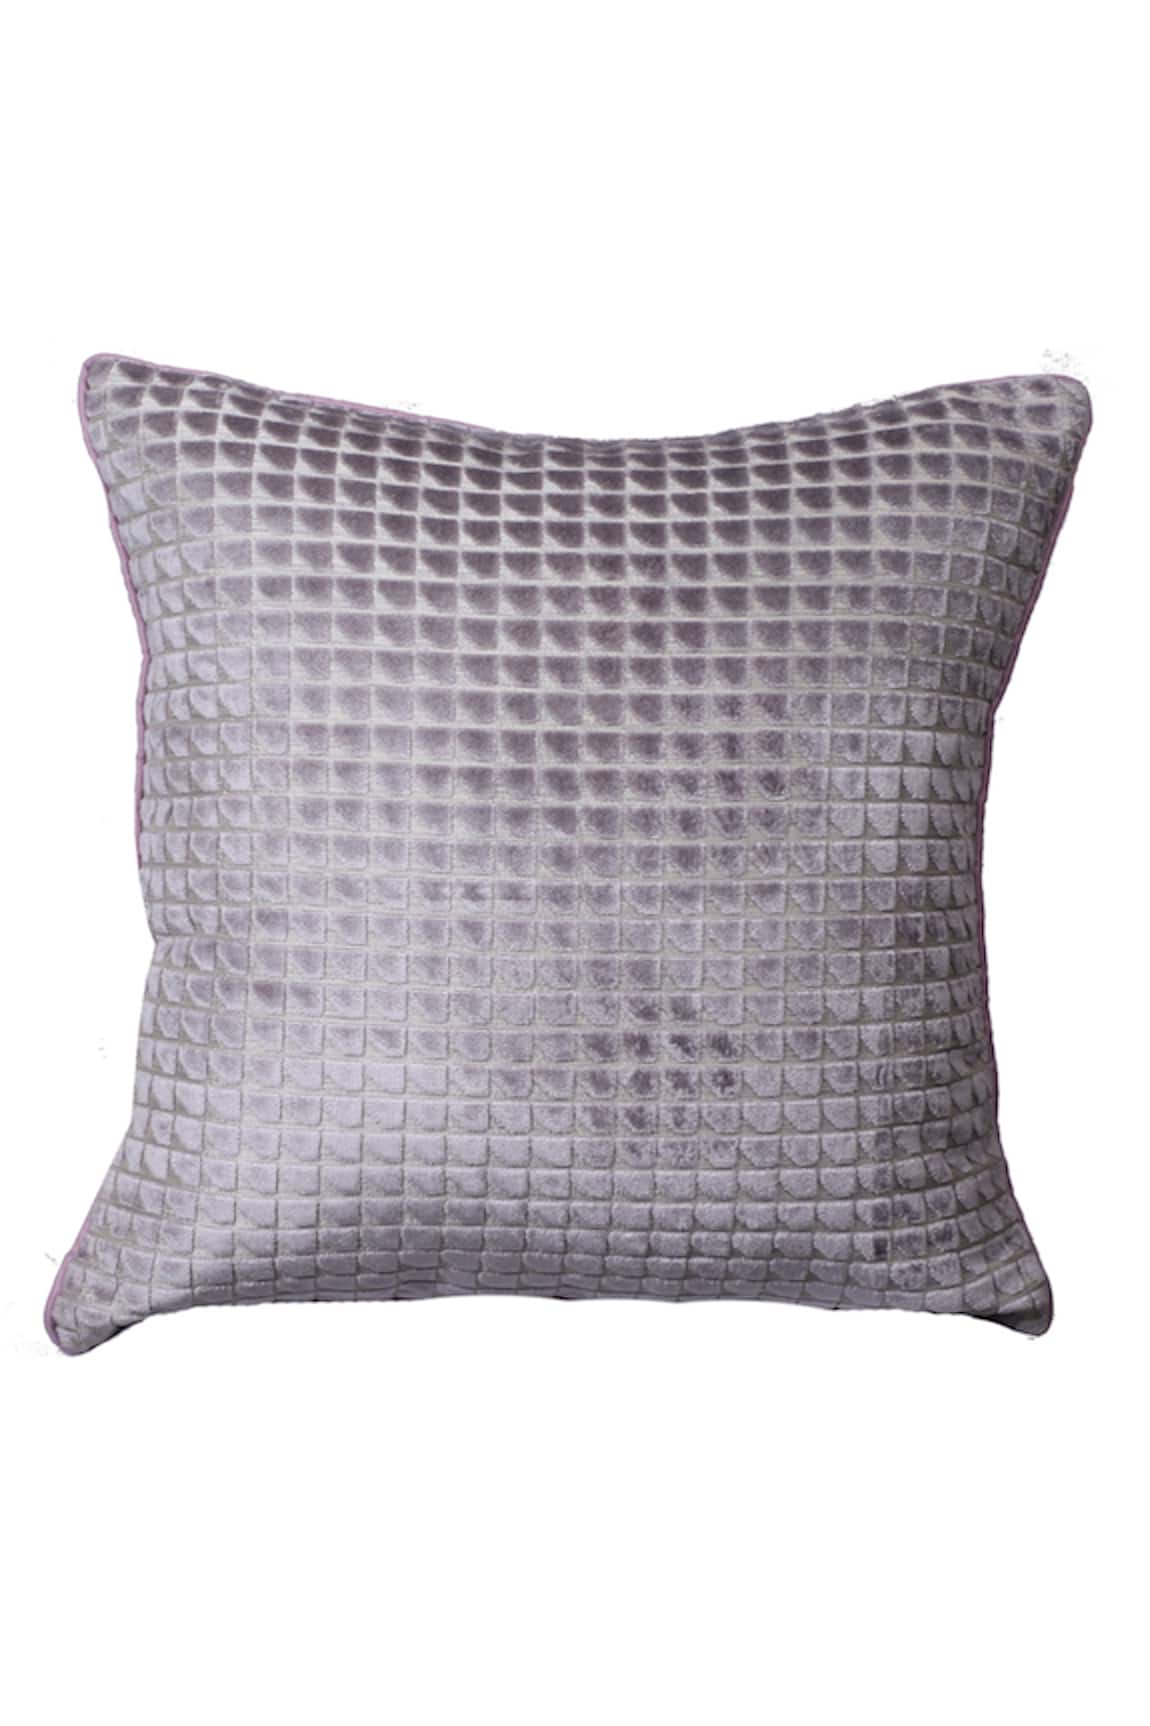 La Paloma Velvet Geometric Pattern Cushion Cover